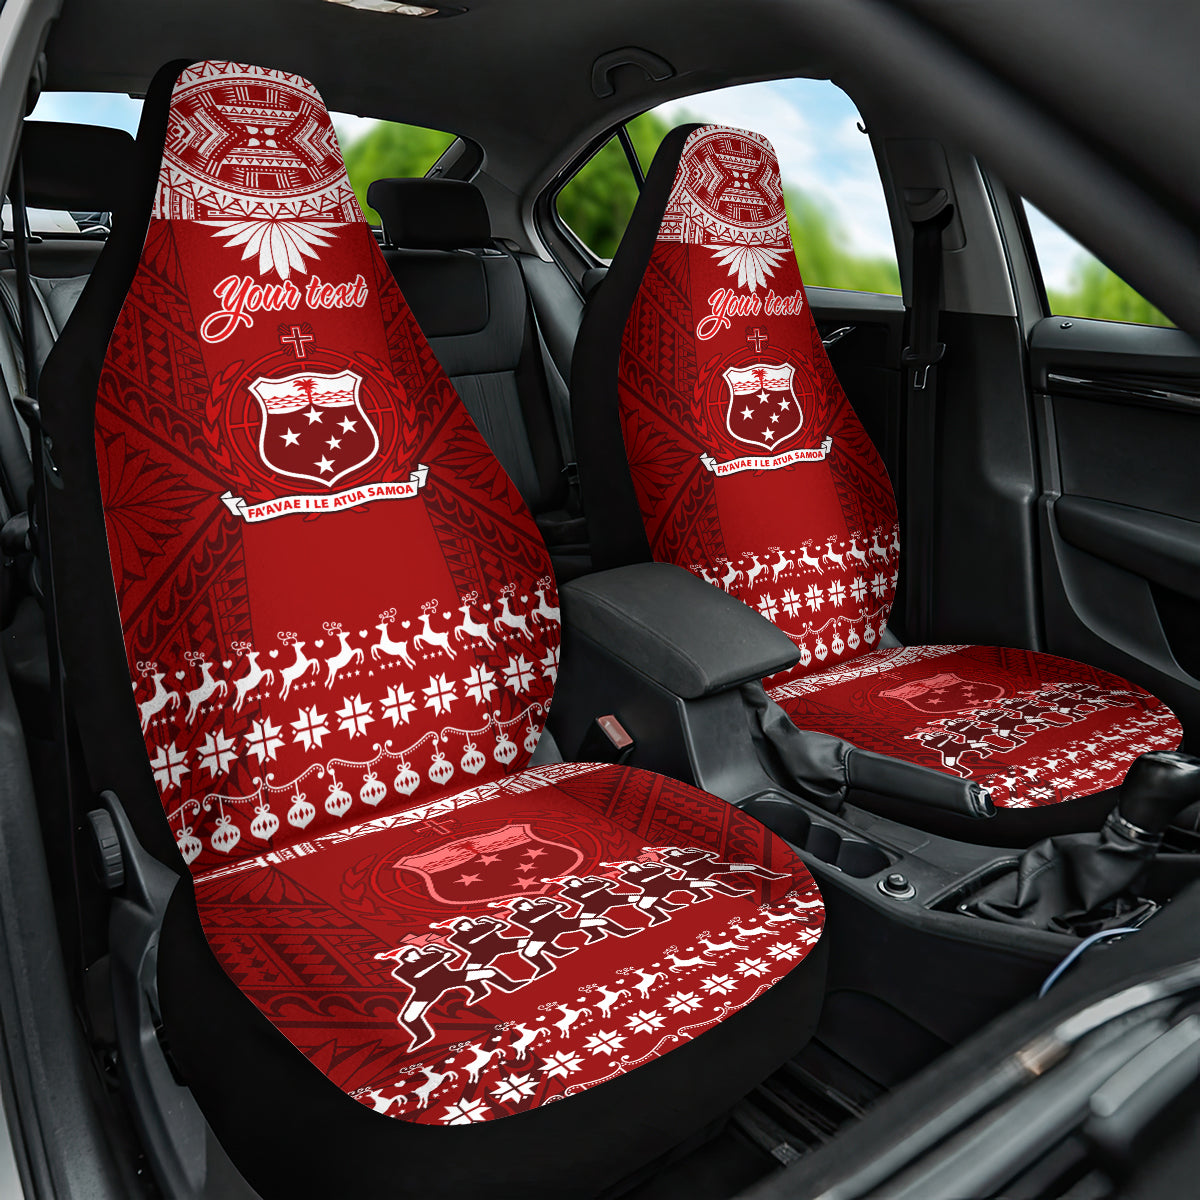 Personalised Toa Samoa Christmas Car Seat Cover Samoa Siva Tau Manuia Le Kerisimasi Red Vibe LT9 One Size Red - Polynesian Pride